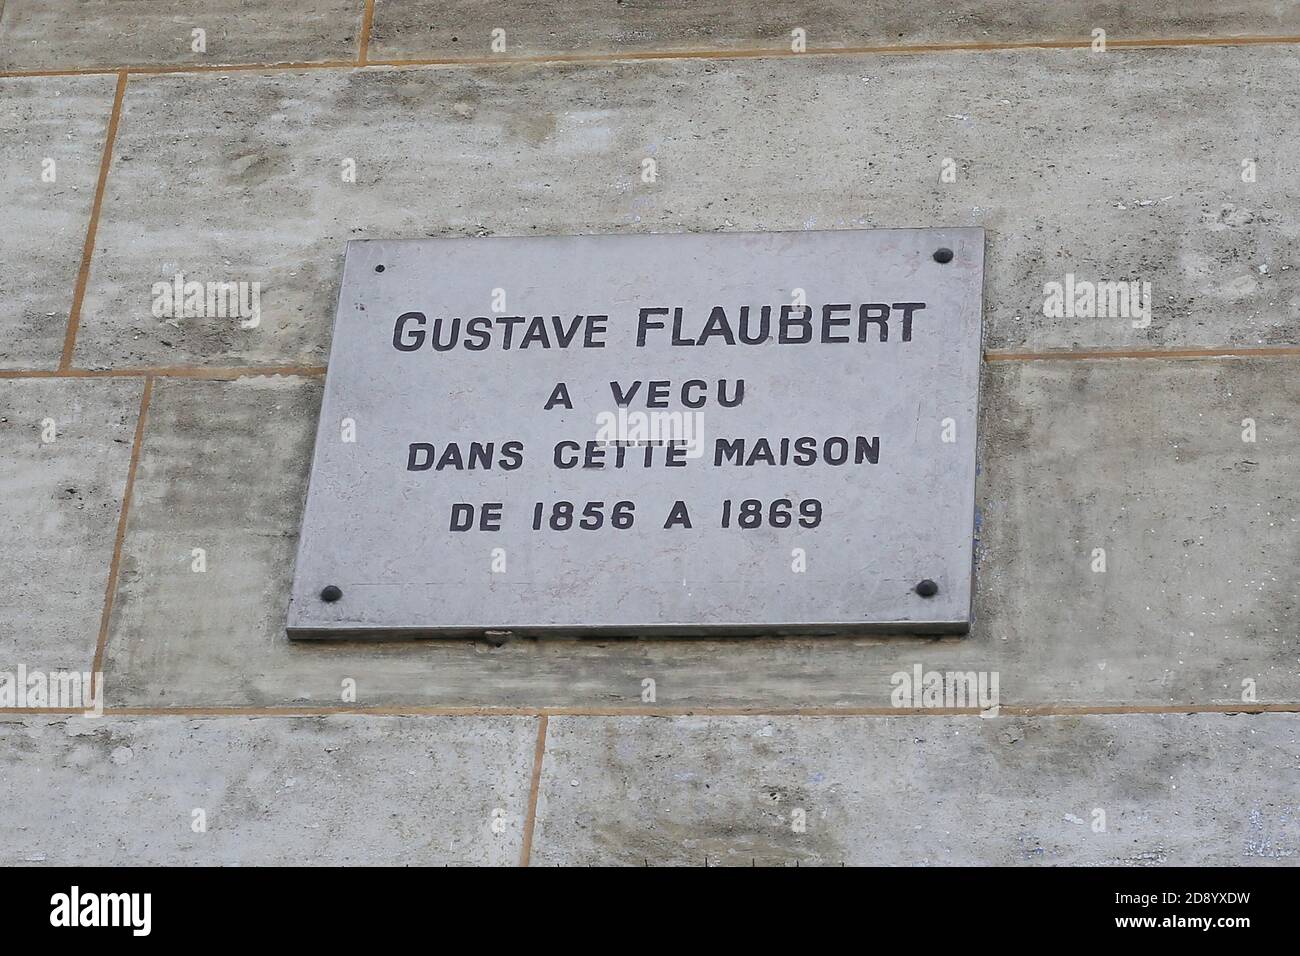 PARÍS, FRANCIA - 20 de mayo de 2018: El escritor francés Gustave Flaubert vivió en esta casa de 1856 a 1869Paris, 42 boulevard du Temple, Gustave Flaubert Foto de stock